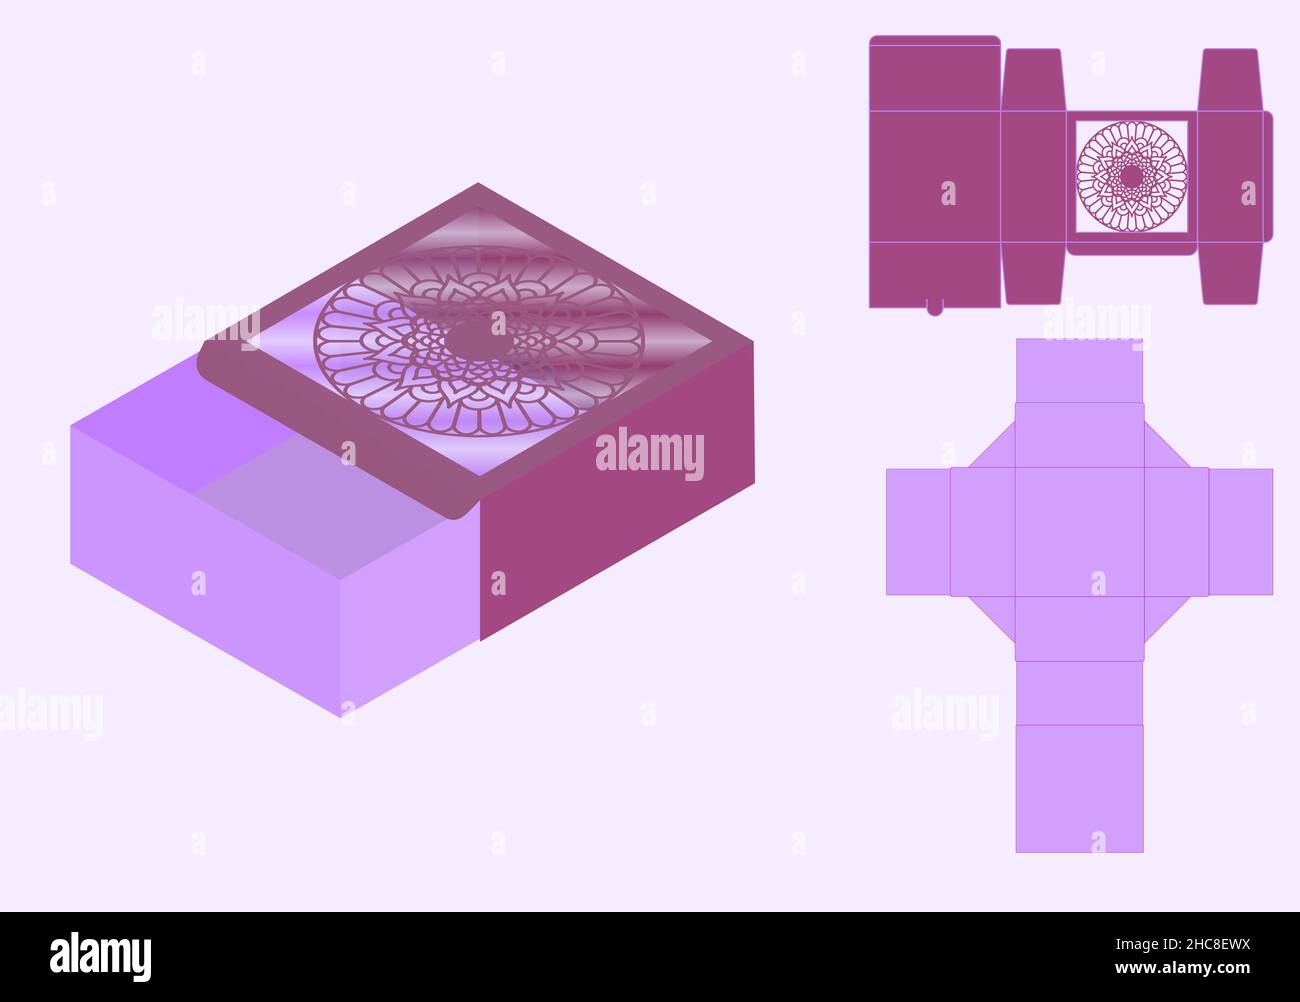 Mandala modèle de découpe de boîte d'emballage détaillé.Lignes de coupe au laser.Modèle de boîte de découpe et de pliage, serrure automatique, conception d'emballage, boîte cadeau de la Saint-Valentin. Illustration de Vecteur